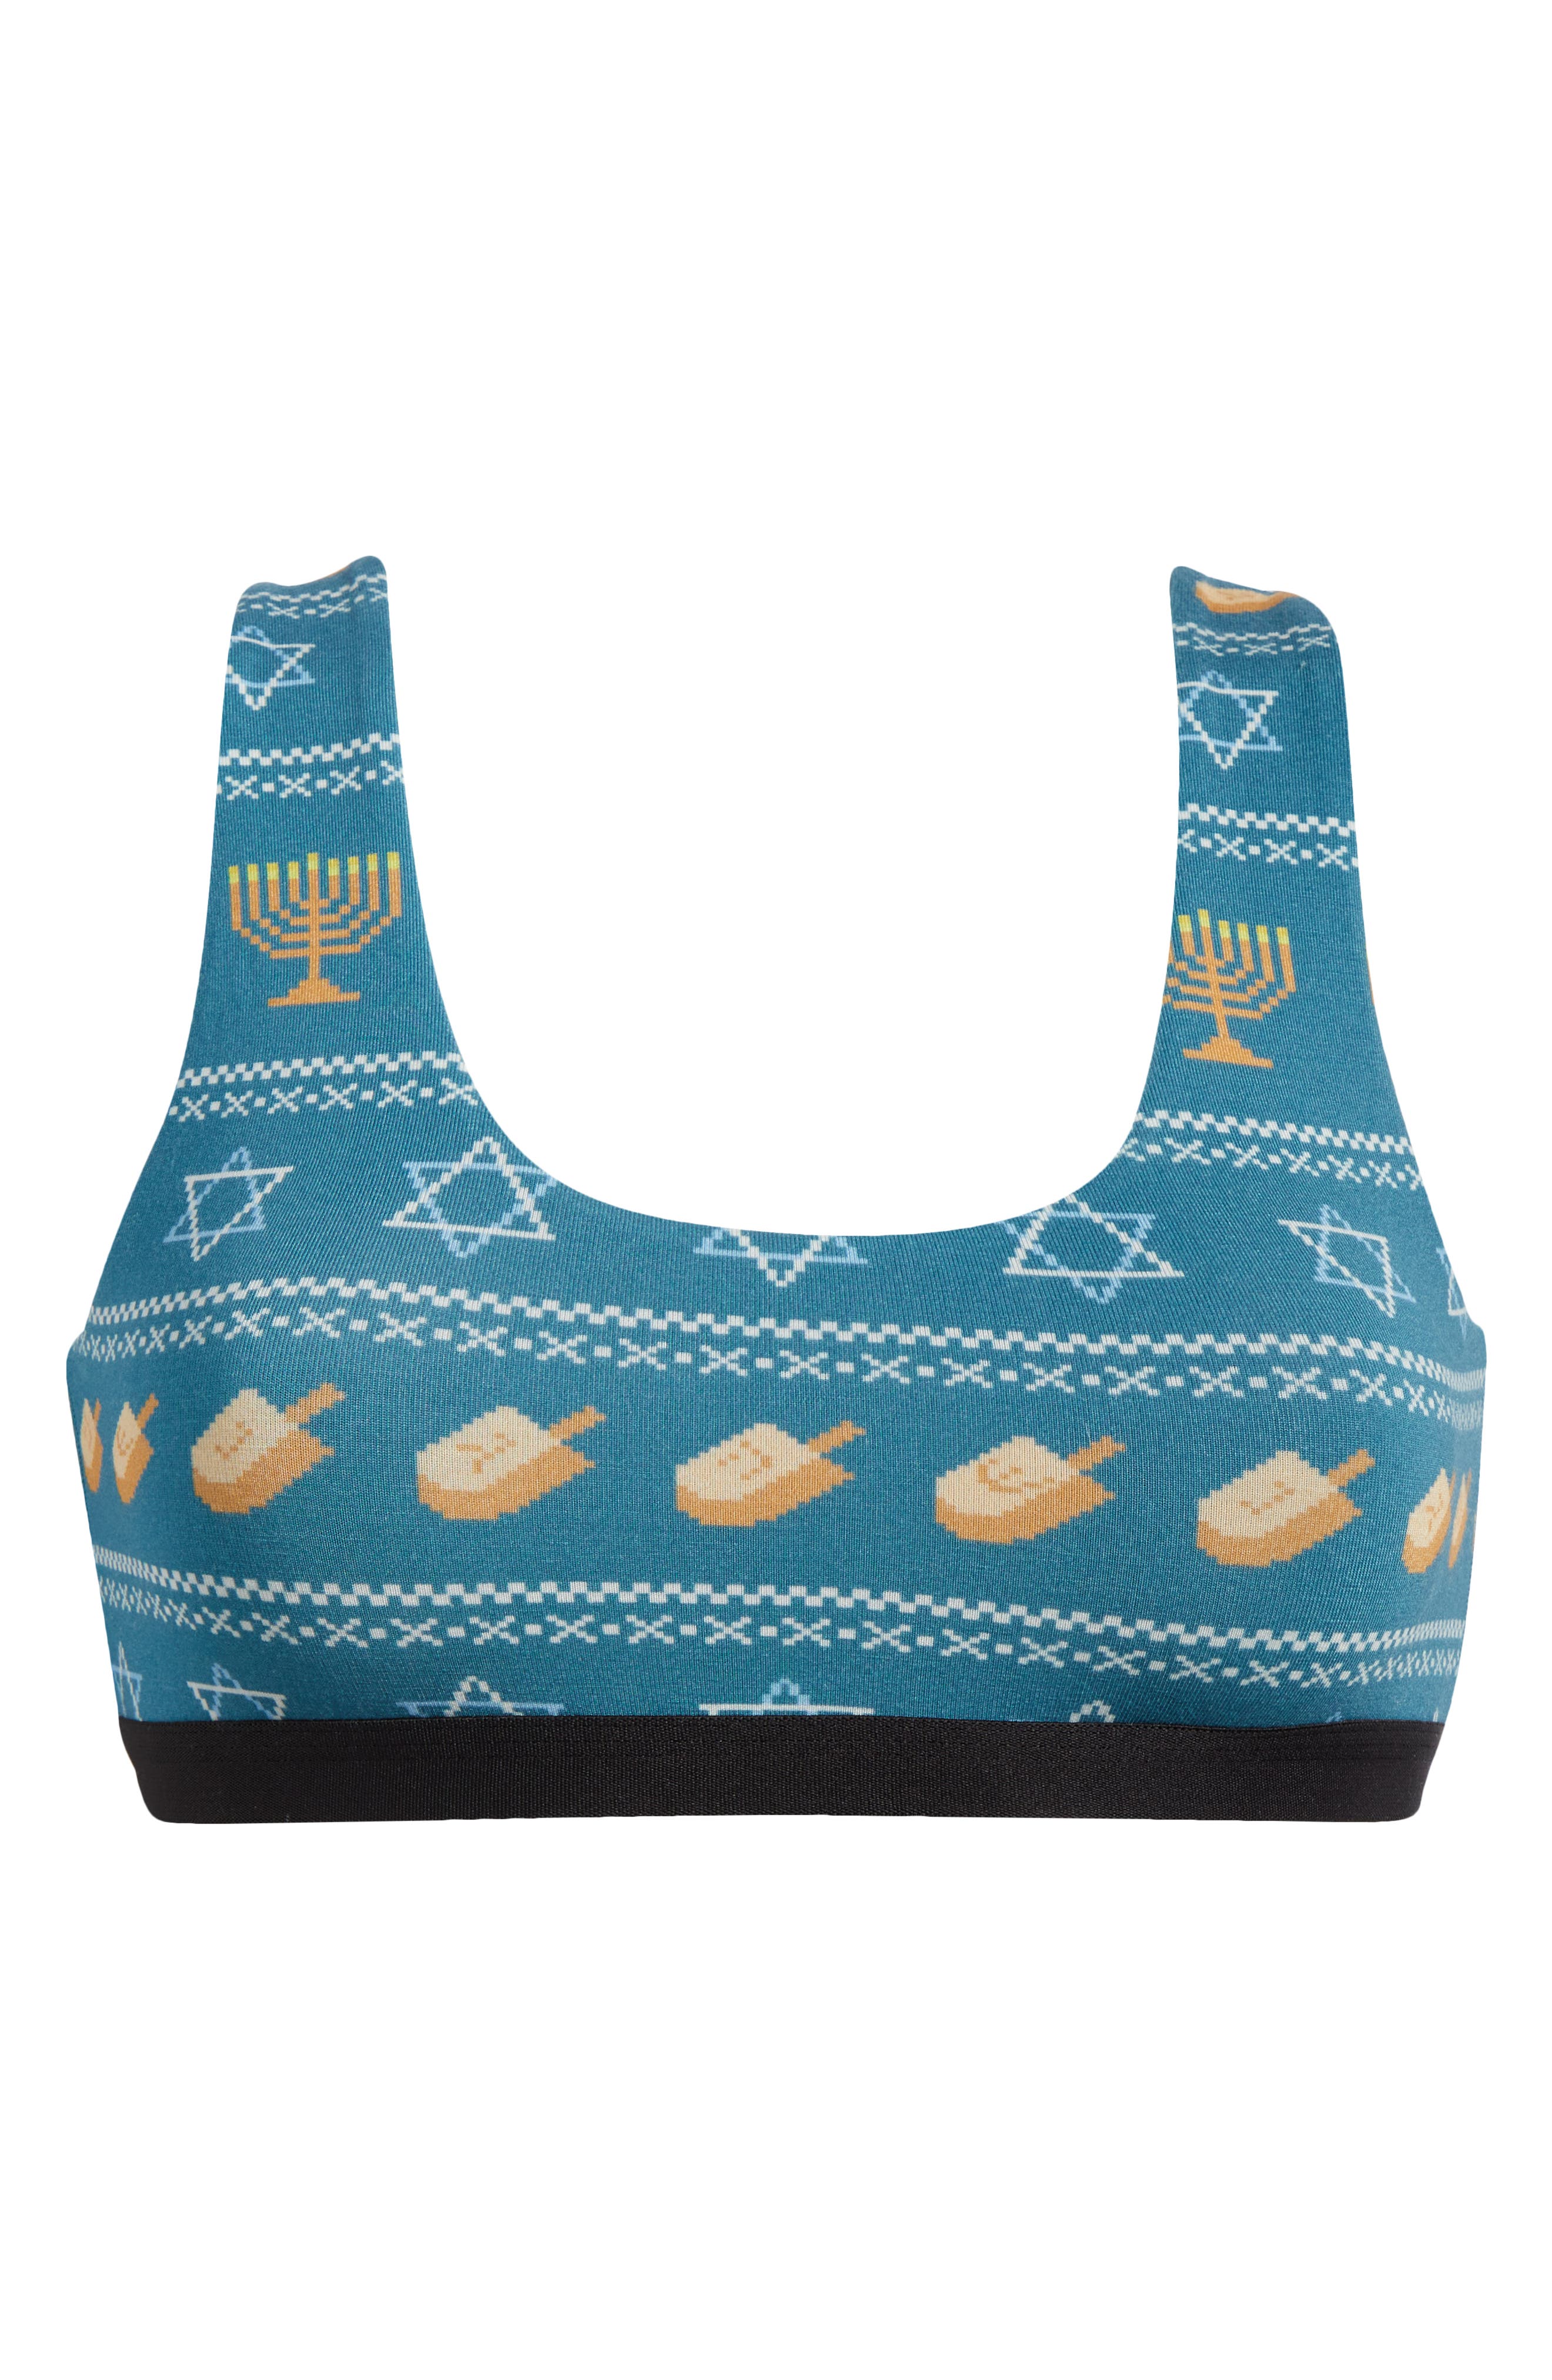 MeUndies Print Bralette in Hanukkah Sweater